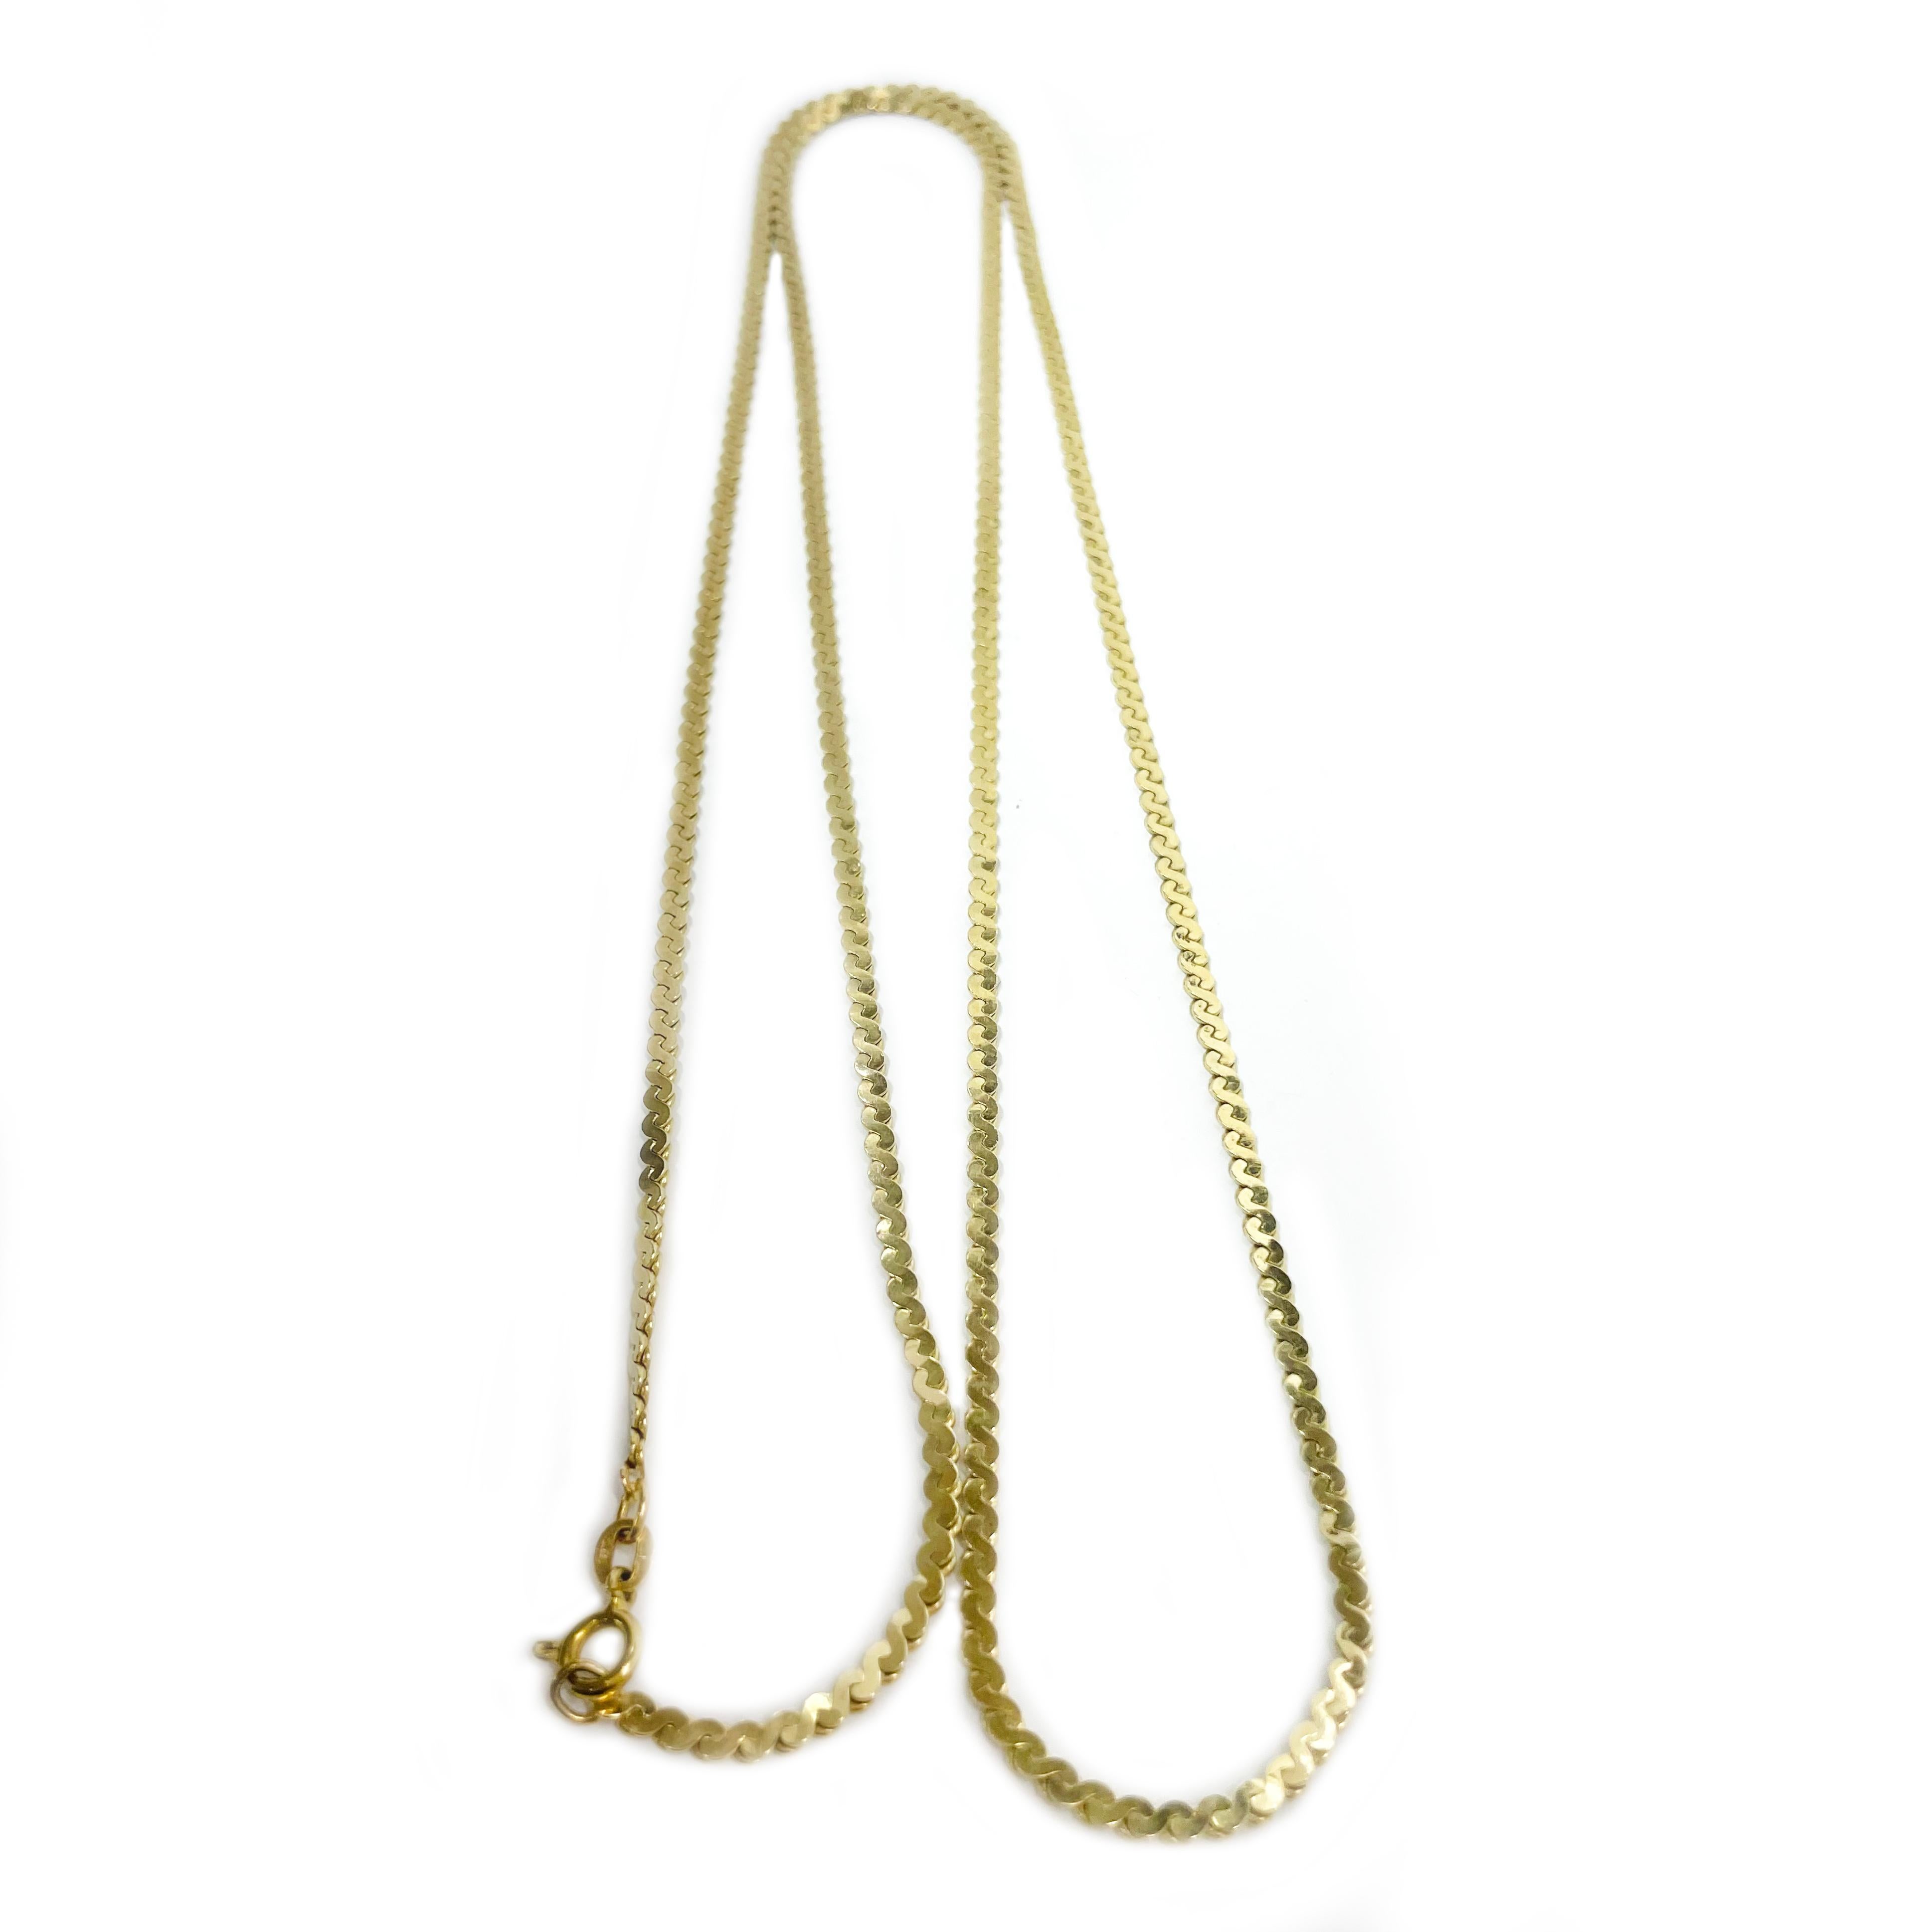 14 Karat Gelbgold Serpentine Kette Halskette. Die Kette im alten Stil ist 2,5 mm breit und die Seillänge beträgt 33